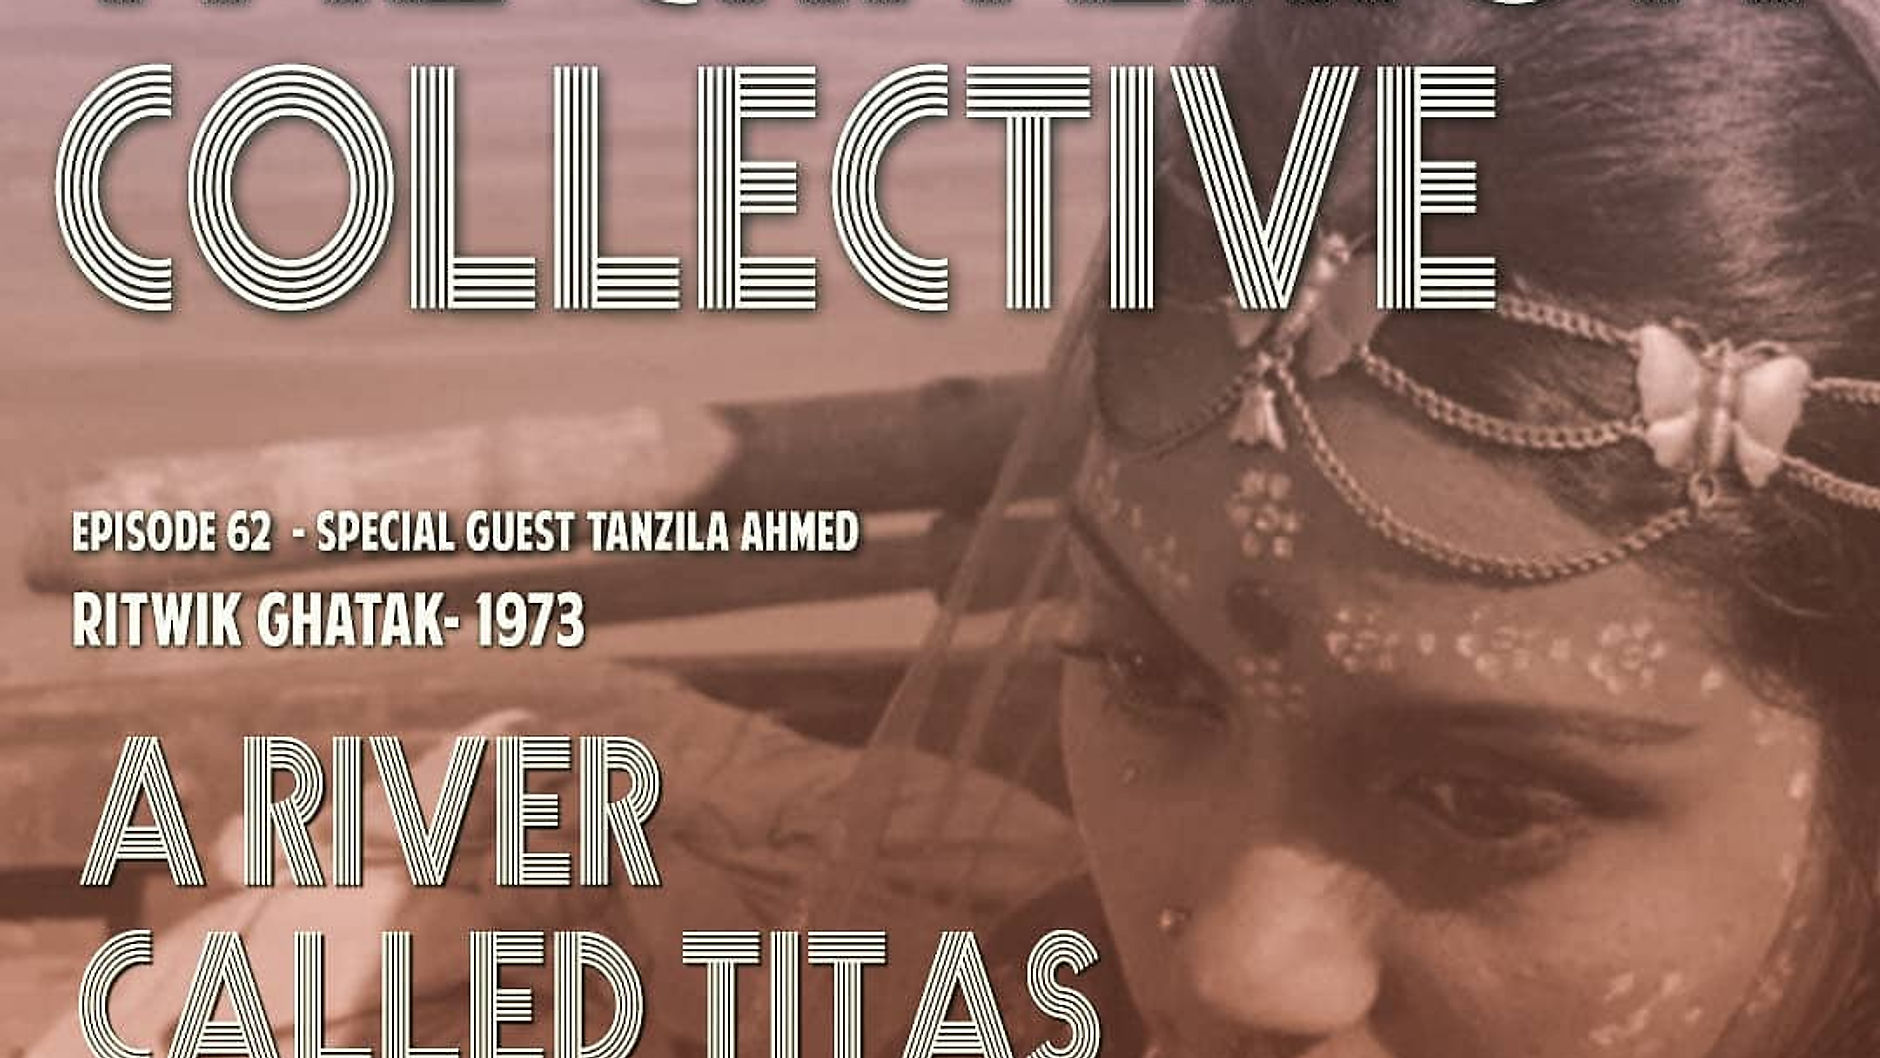 The Criterion Collective 62 - A River Called Titas